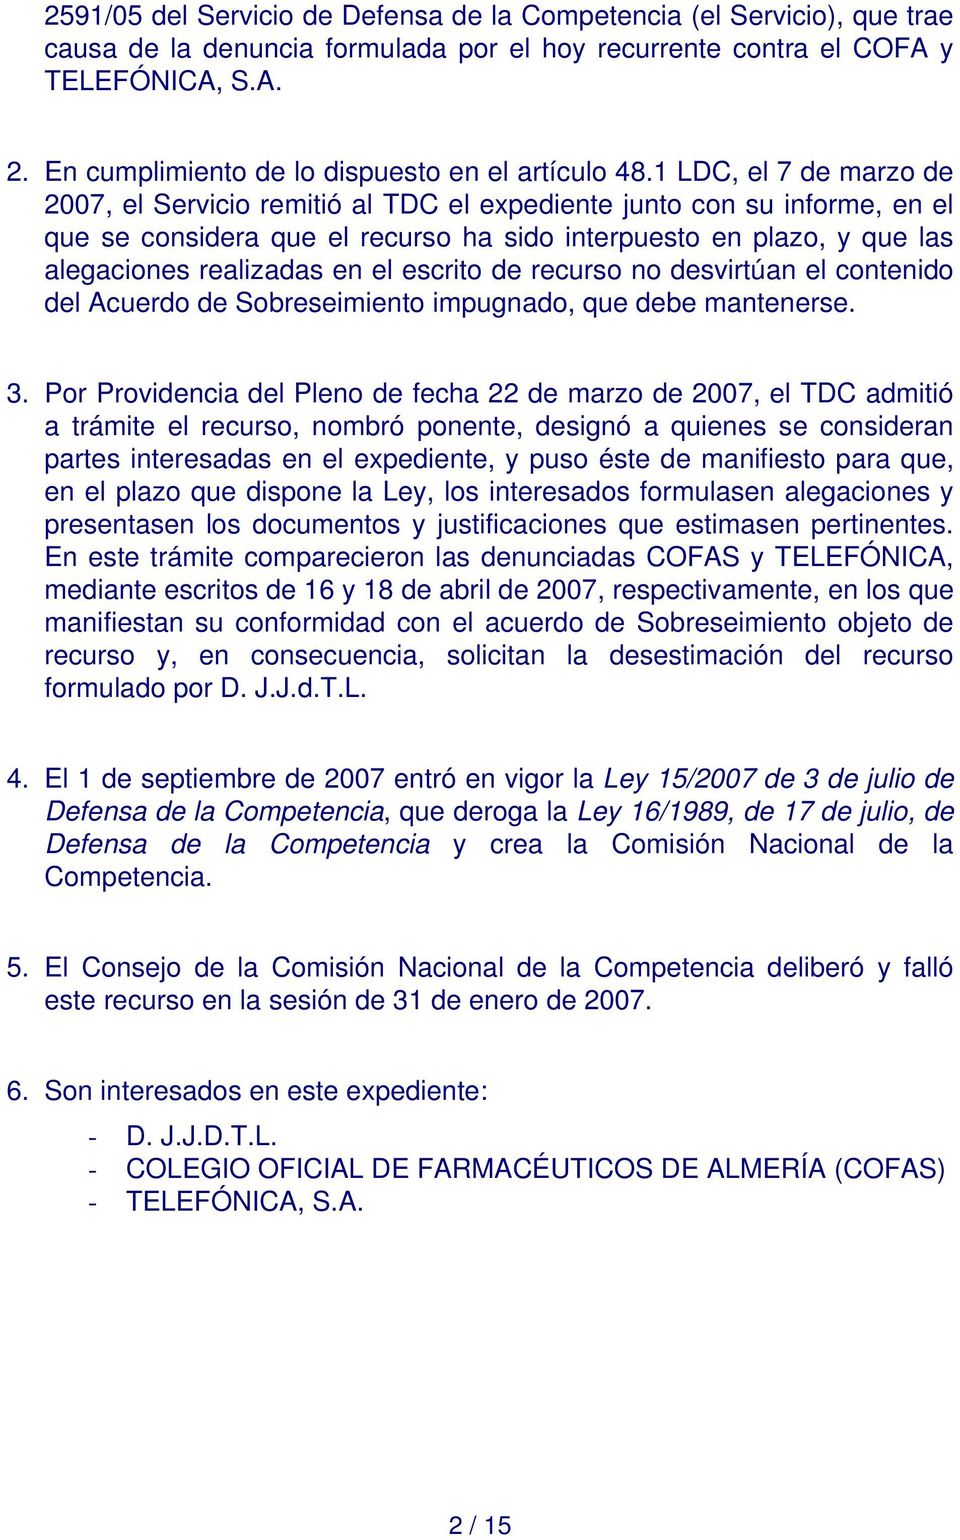 1 LDC, el 7 de marzo de 2007, el Servicio remitió al TDC el expediente junto con su informe, en el que se considera que el recurso ha sido interpuesto en plazo, y que las alegaciones realizadas en el